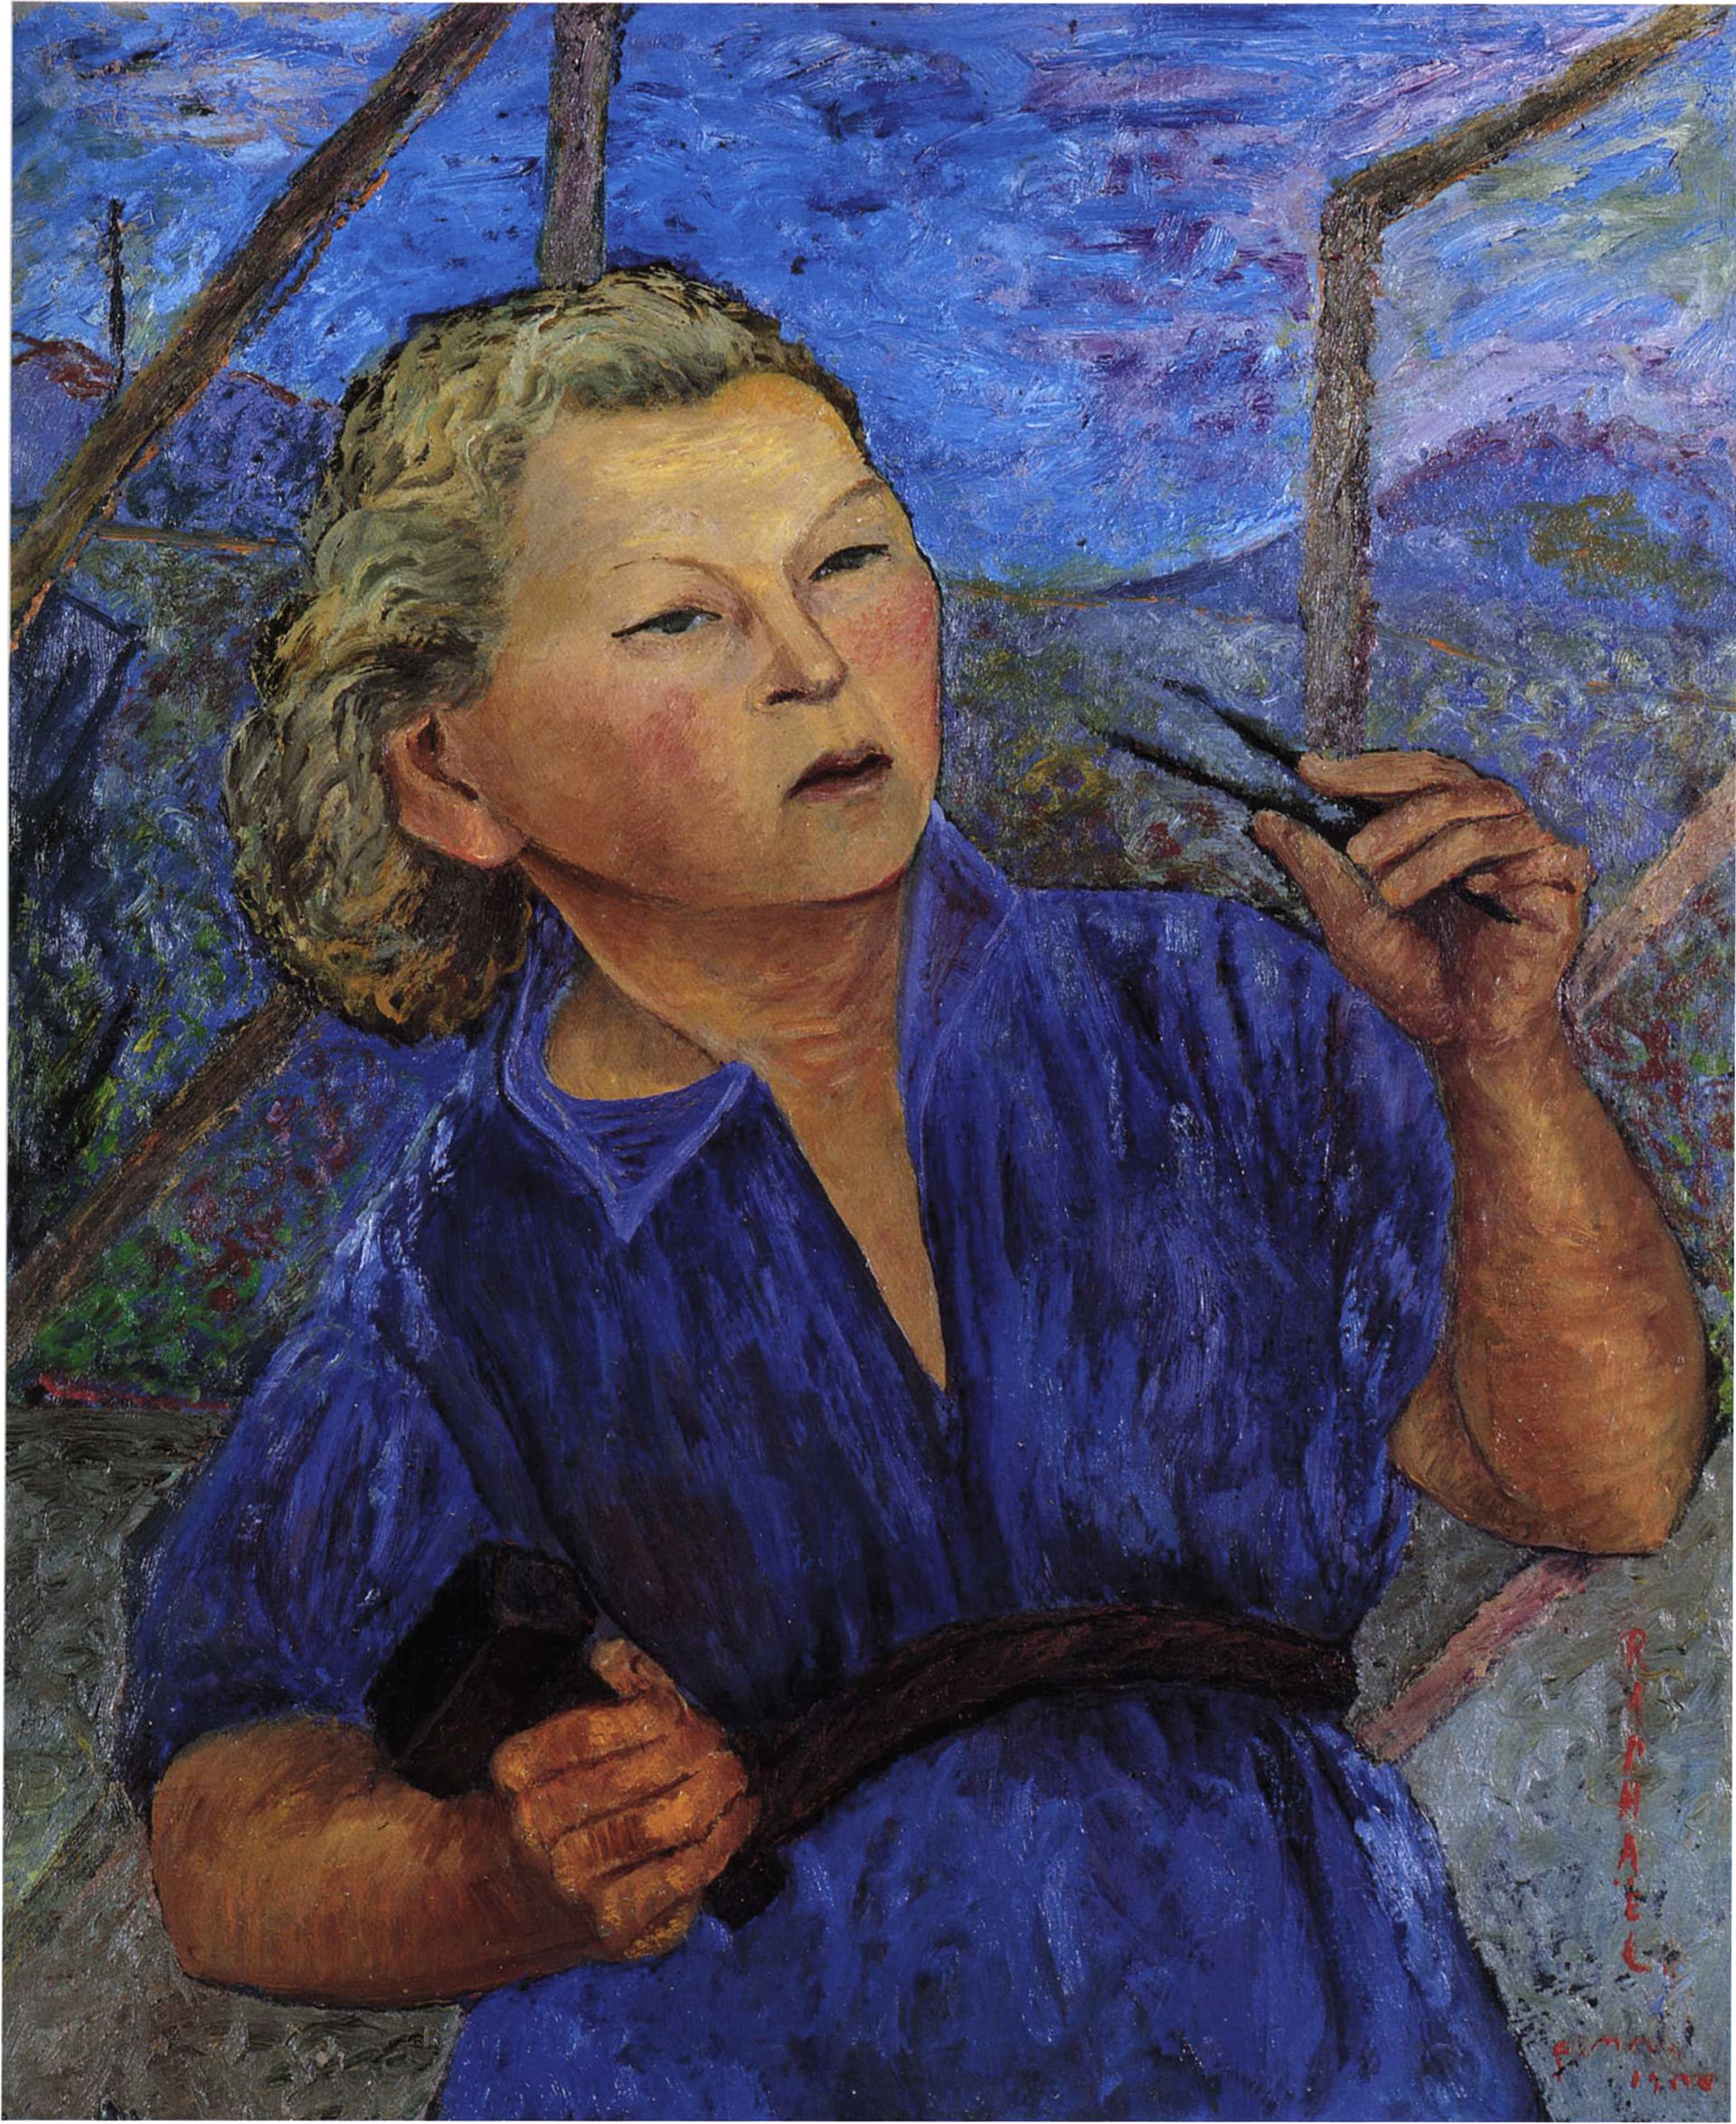 Antonietta Raphaël “Autoritratto con tuta blu”, 1940 ca. Olio su tavola, cm 77 x 63. Galleria del Laocoonte, Roma/Londra